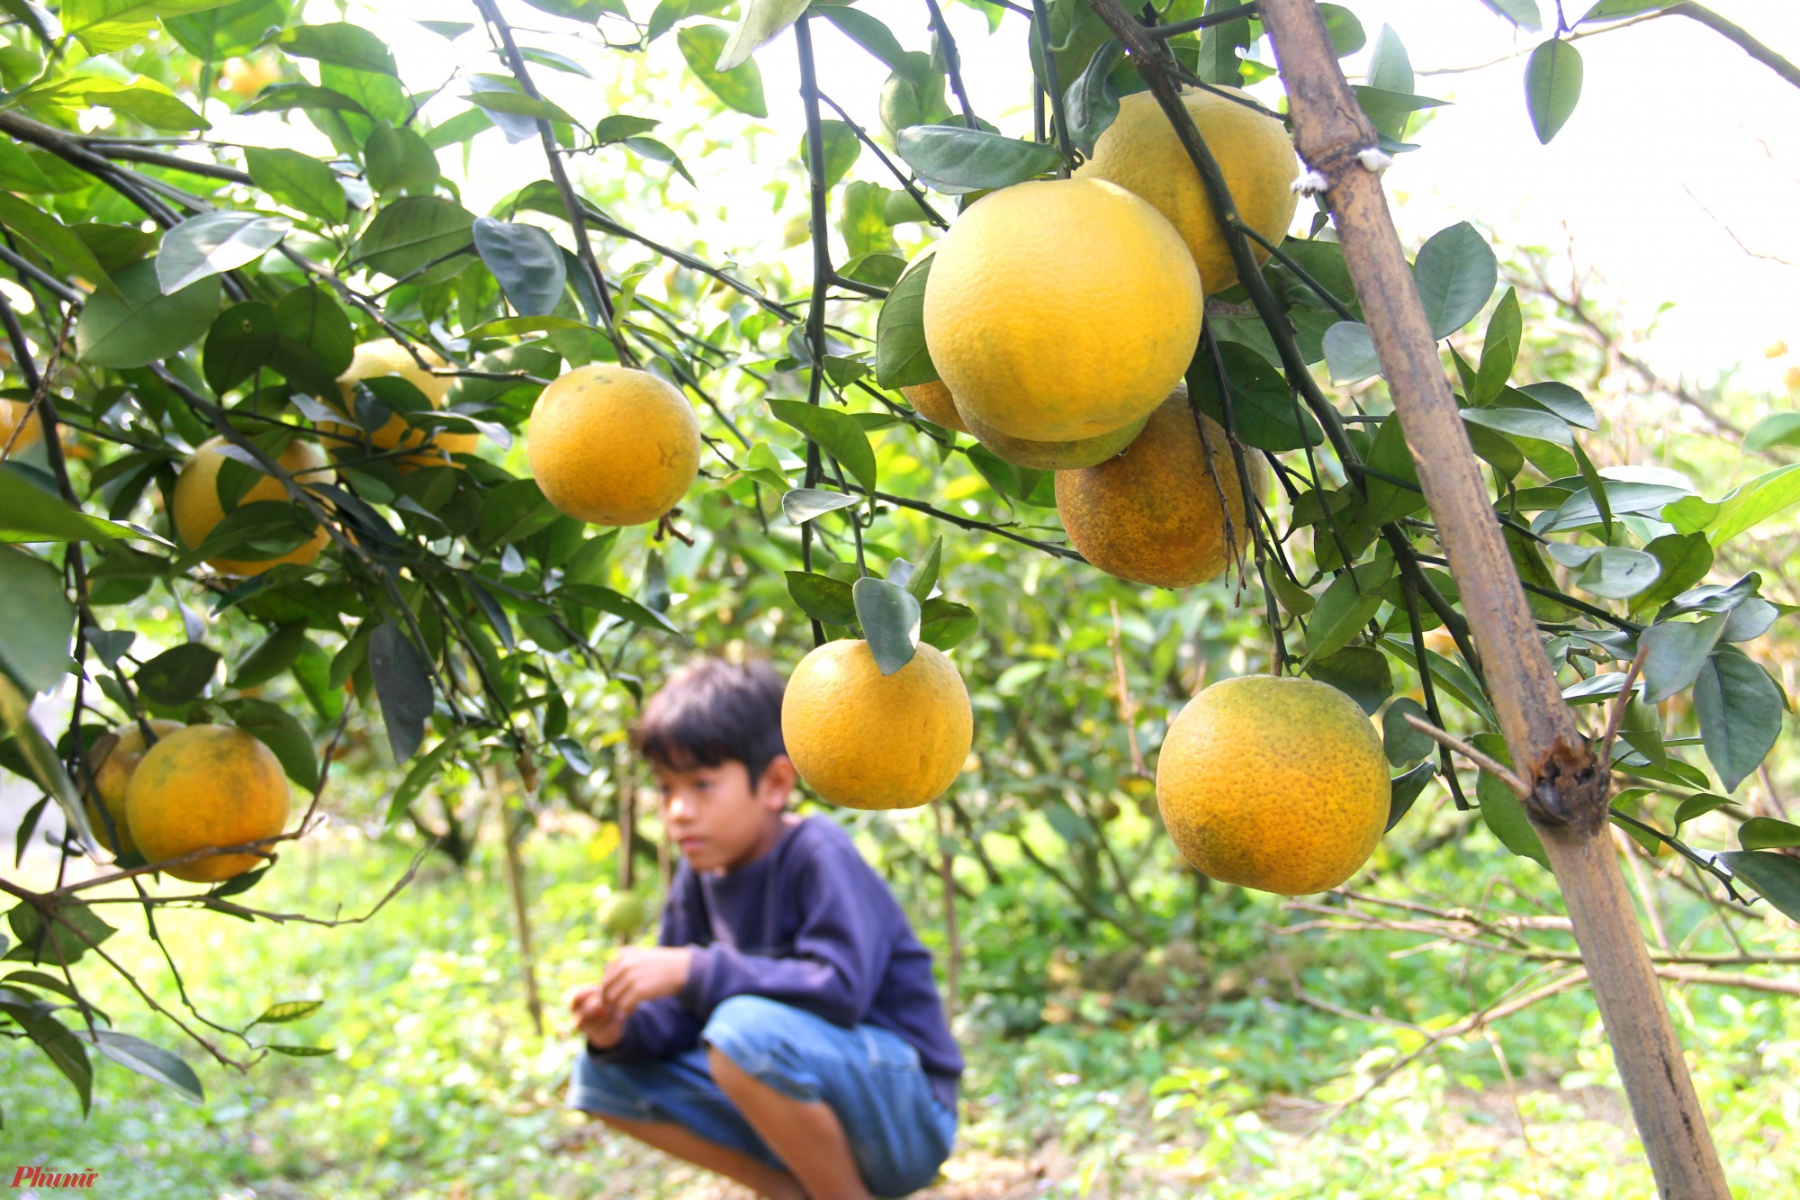 “Mọi năm thường phải đến giáp tết khách mới bắt đầu về vườn mua cam nhiều. Năm nay dịch nên khách họ mua sớm hơn. Khách hiện chủ yếu là người ở TP.Vinh và huyện Nghi Lộc mua gửi làm quà biếu” - ông Thọ nói.